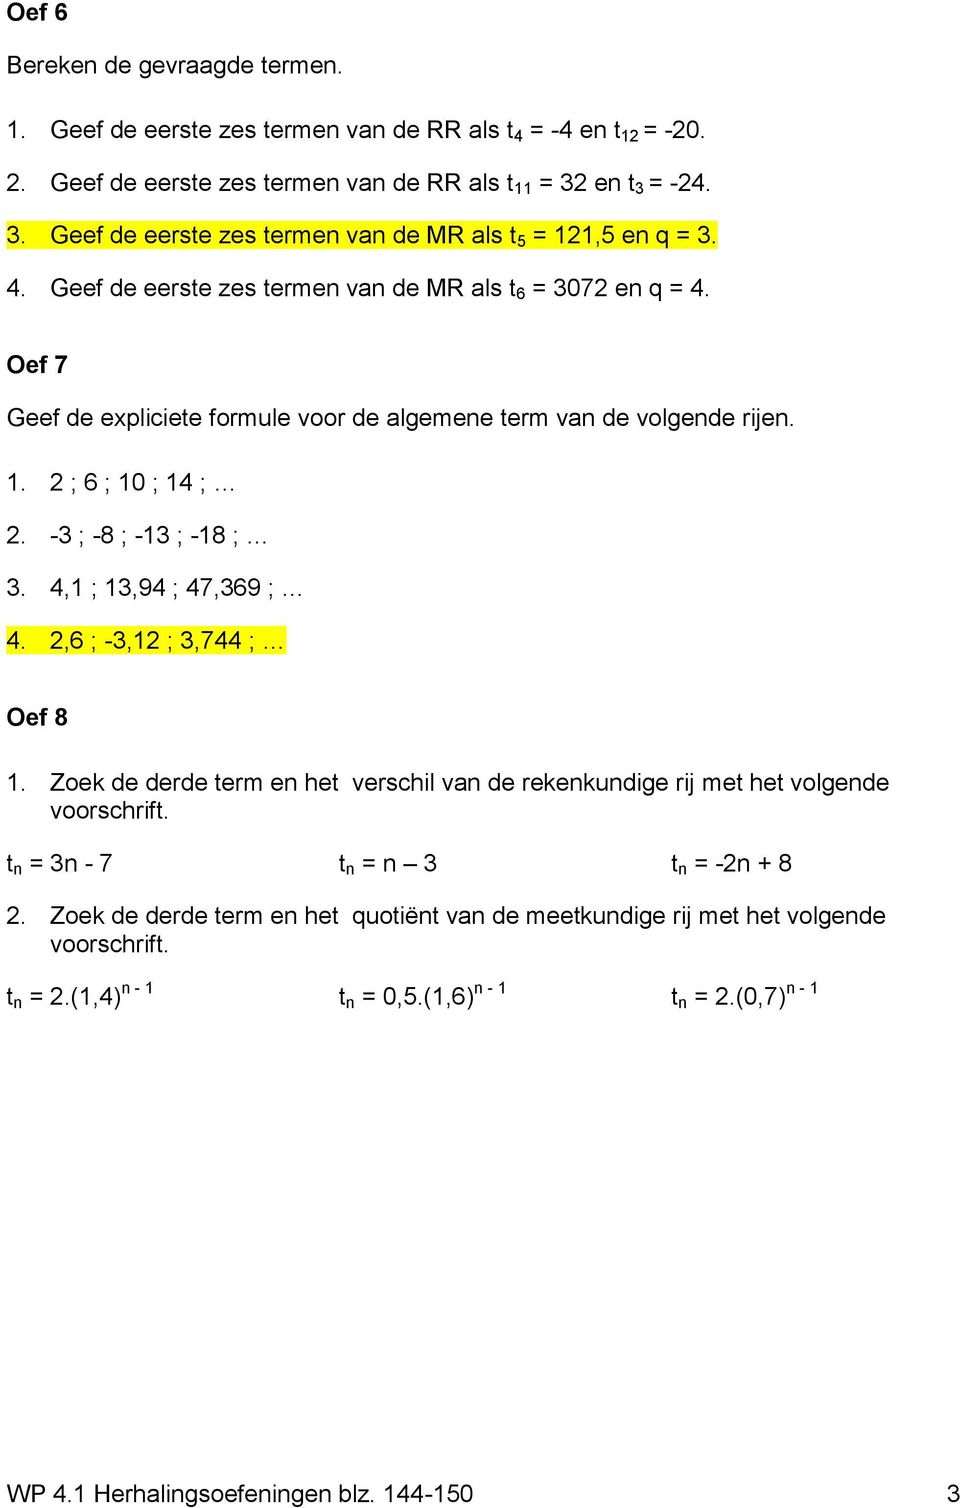 Oef 7 Geef de expliciete formule voor de algemene term van de volgende rijen. 1. 2 ; 6 ; 10 ; 14 ; 2. -3 ; -8 ; -13 ; -18 ; 3. 4,1 ; 13,94 ; 47,369 ; 4. 2,6 ; -3,12 ; 3,744 ; Oef 8 1.